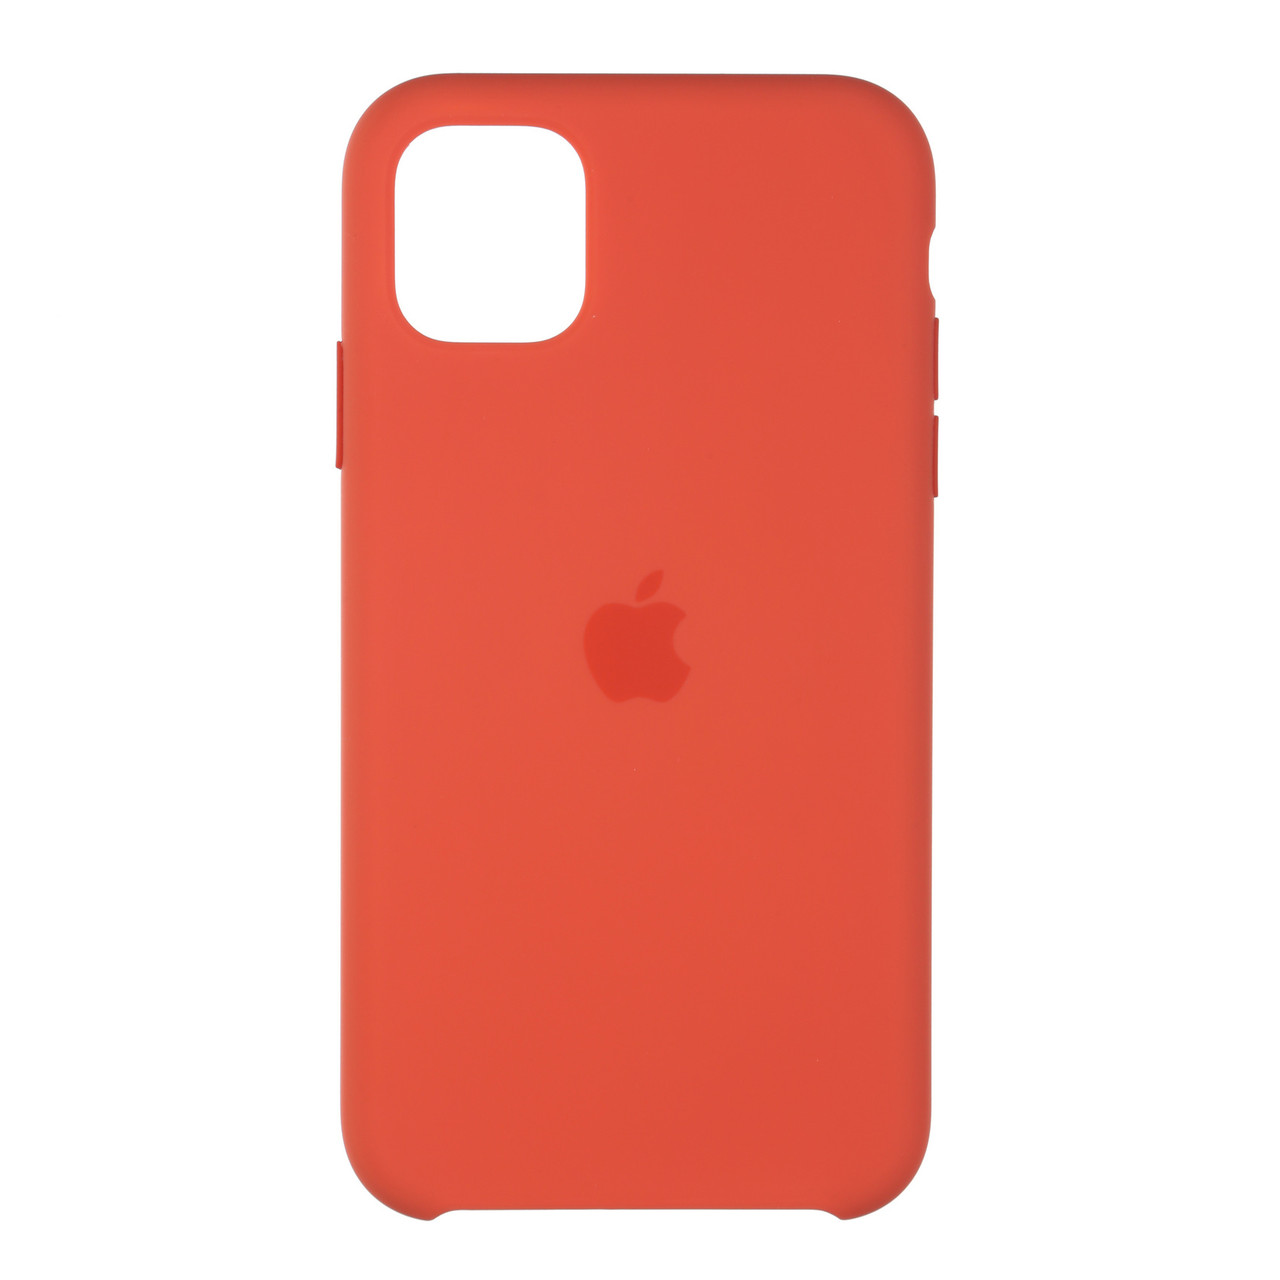 

Оригинальный Силиконовый Чехол для Apple iPhone 11 Pro Orange (55679, Оранжевый